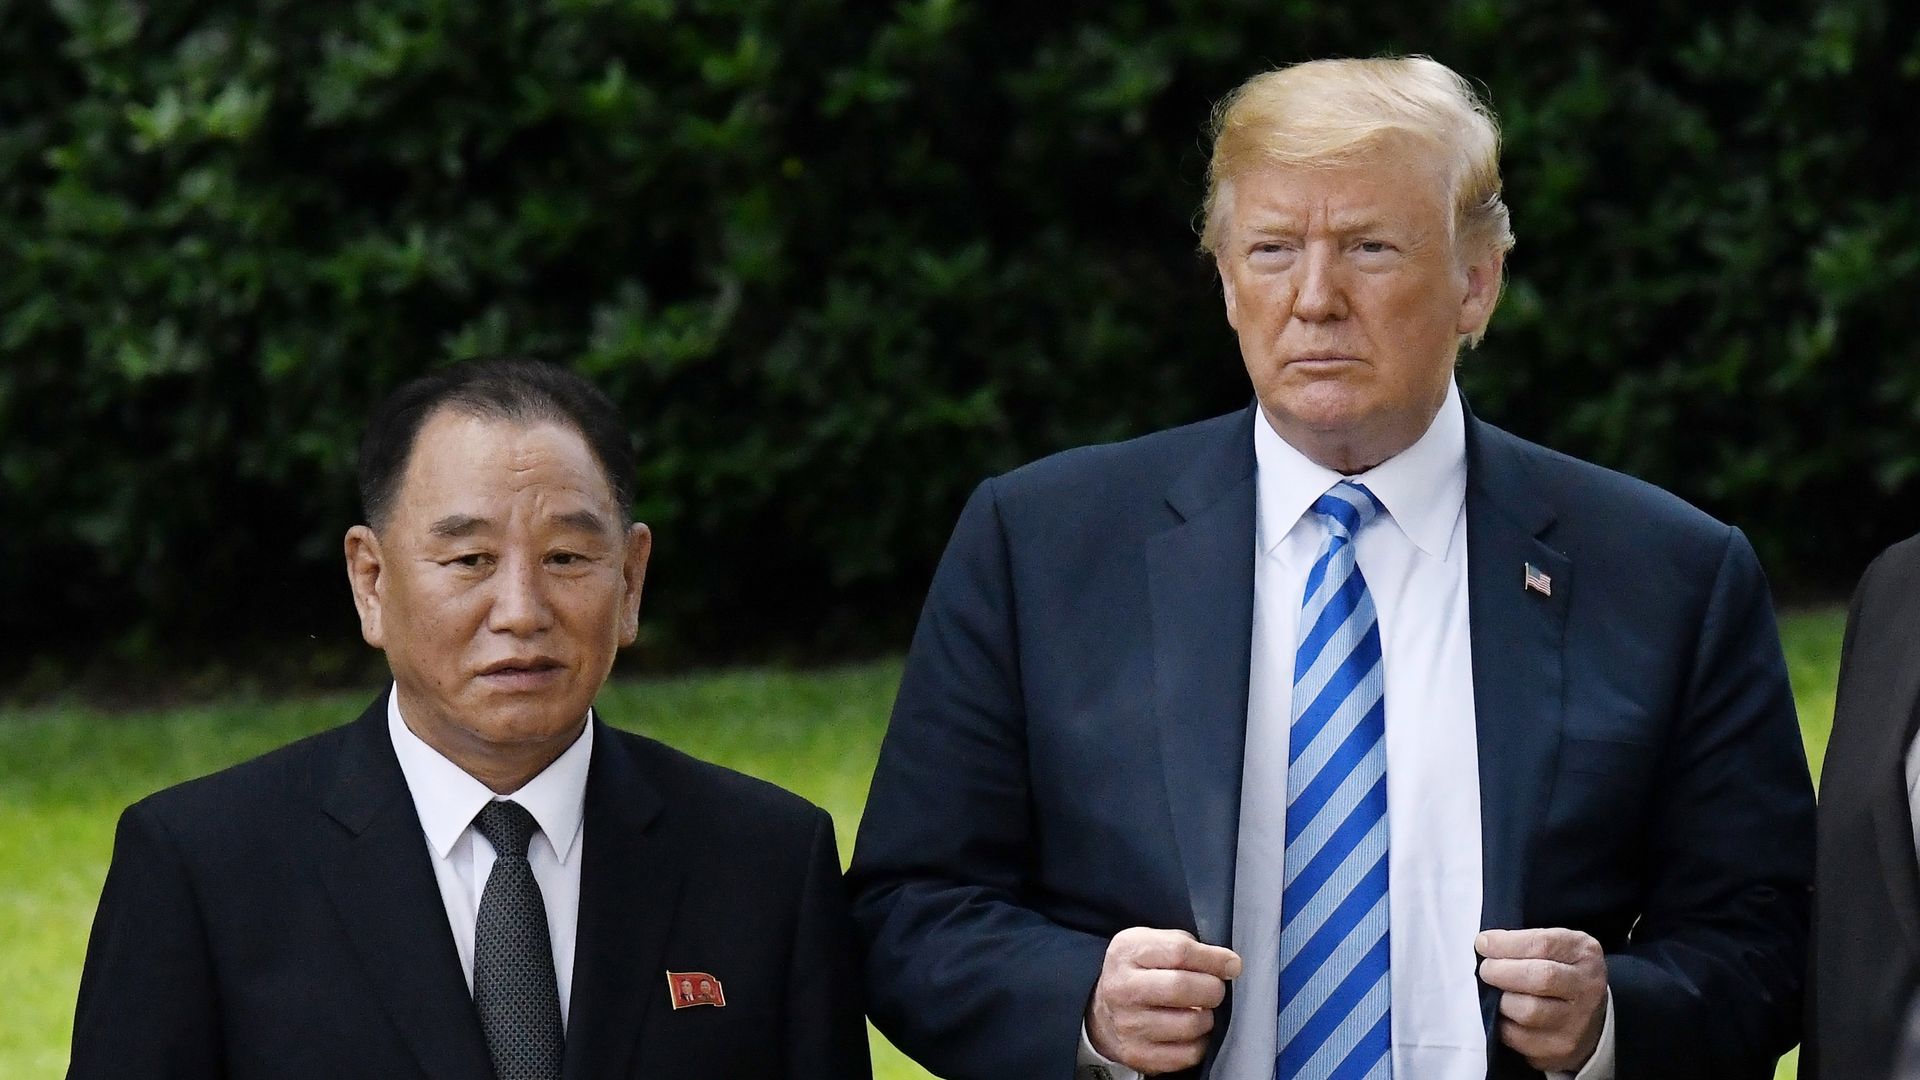 Trump and Kim Yong-chol.